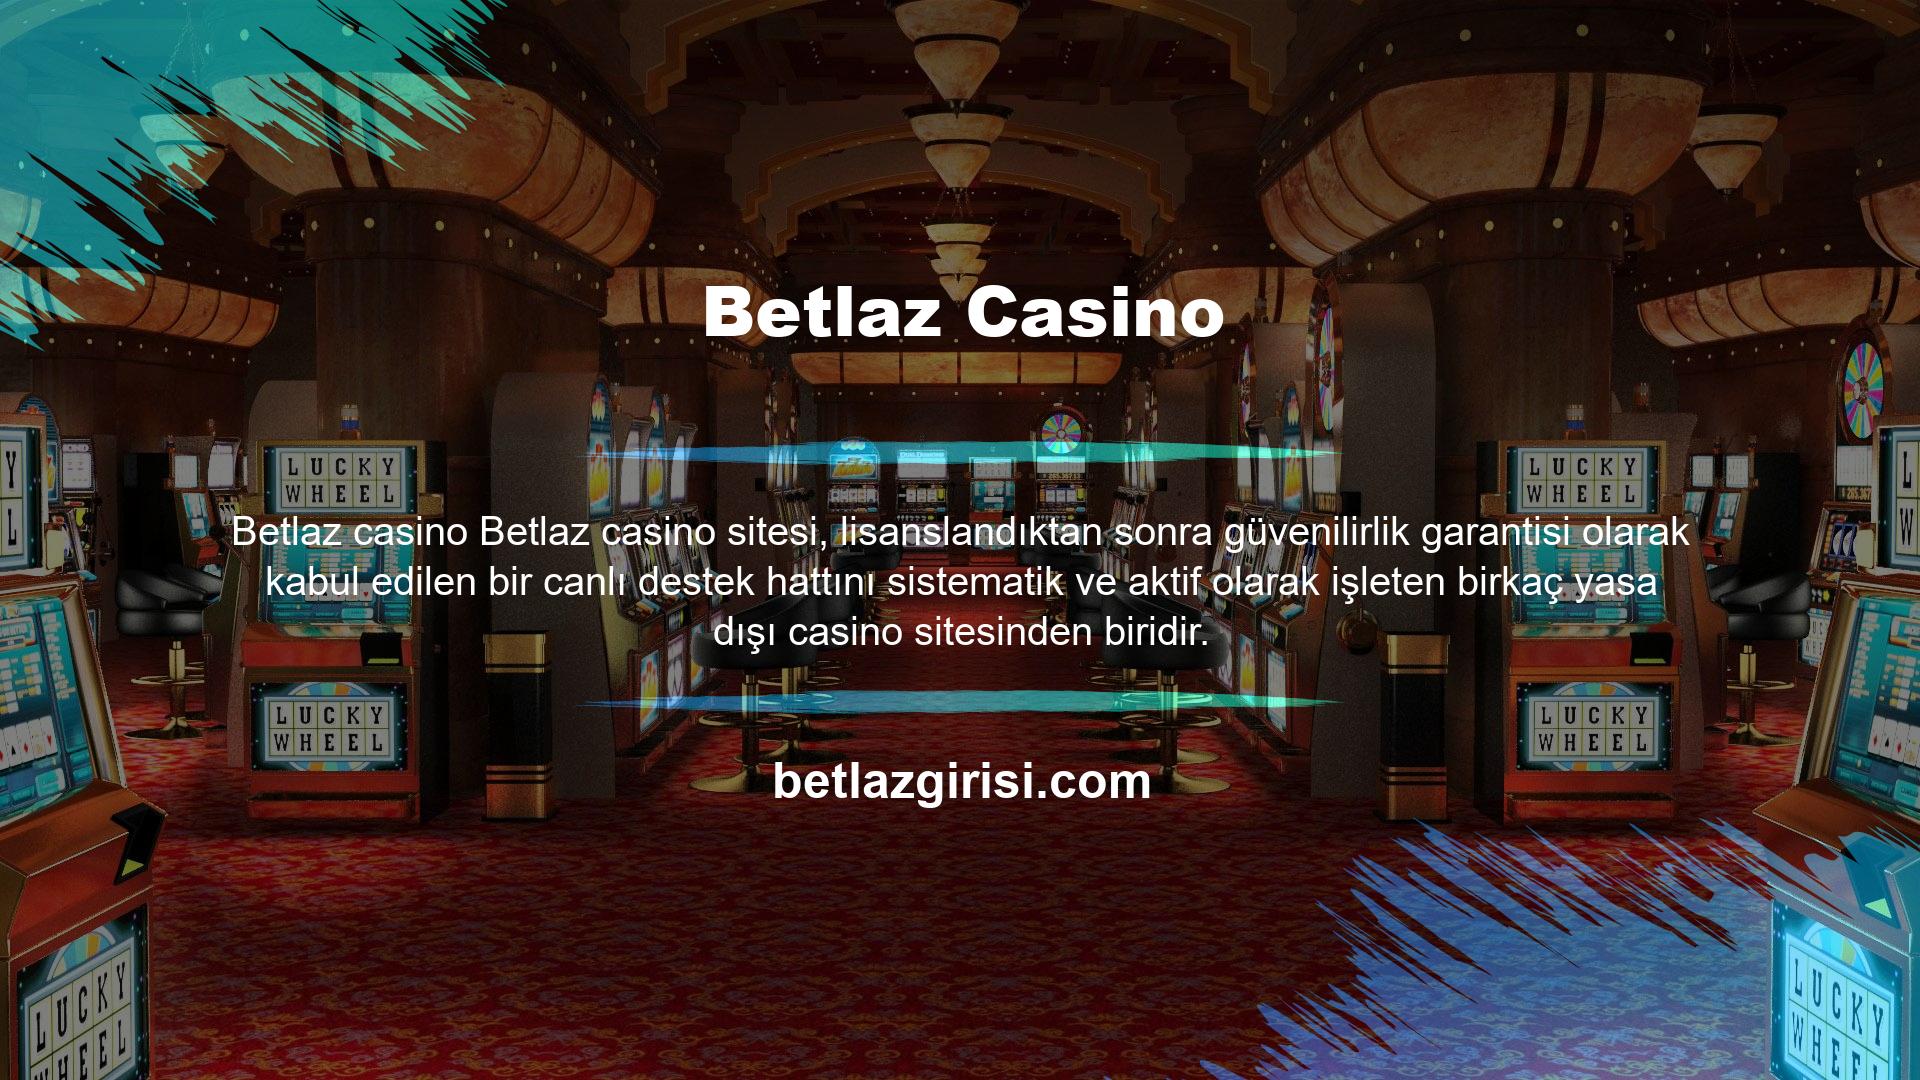 Bahisçiler, Web Sitesinden aldıkları casino hizmetlerini ve Web Sitesi üzerinden yapılan ödeme işlemlerini Betlaz Bahis Sitesi Lisanslama Standartlarına uygun olarak sağlamaktadır